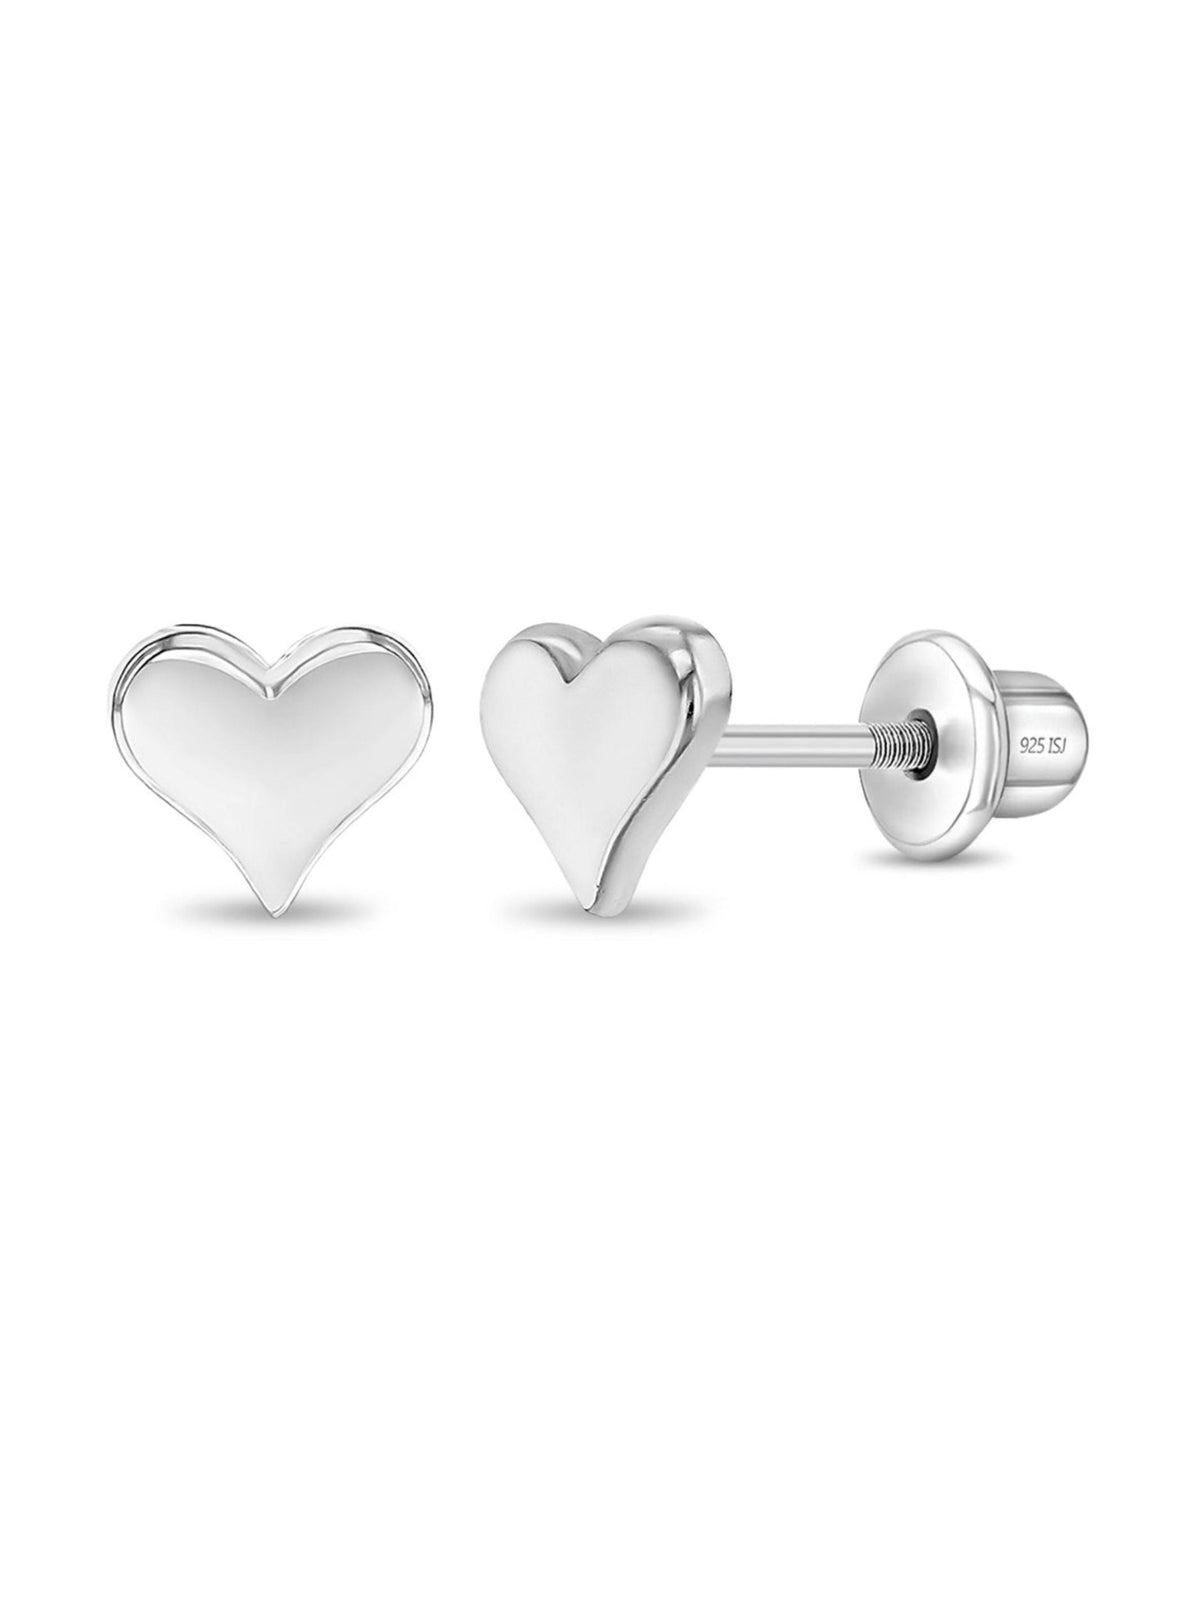 Heart Silver Stud Earrings - LeMel